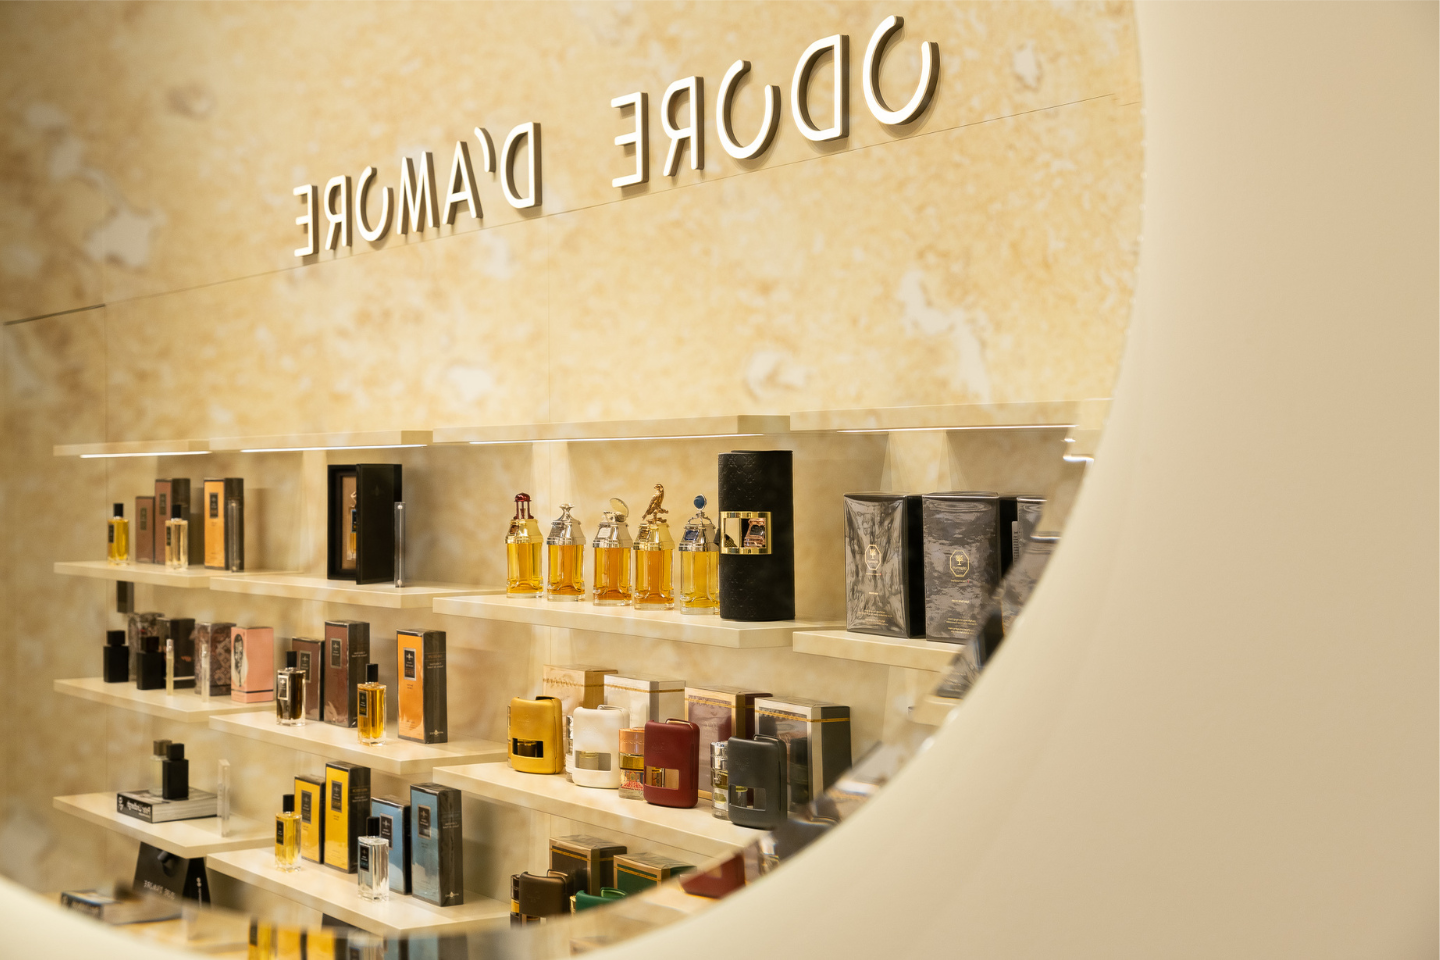 Sostinėje duris atvėrė nauja aukštosios parfumerijos parduotuvė.<br> „Odore d‘amore“ nuotr.